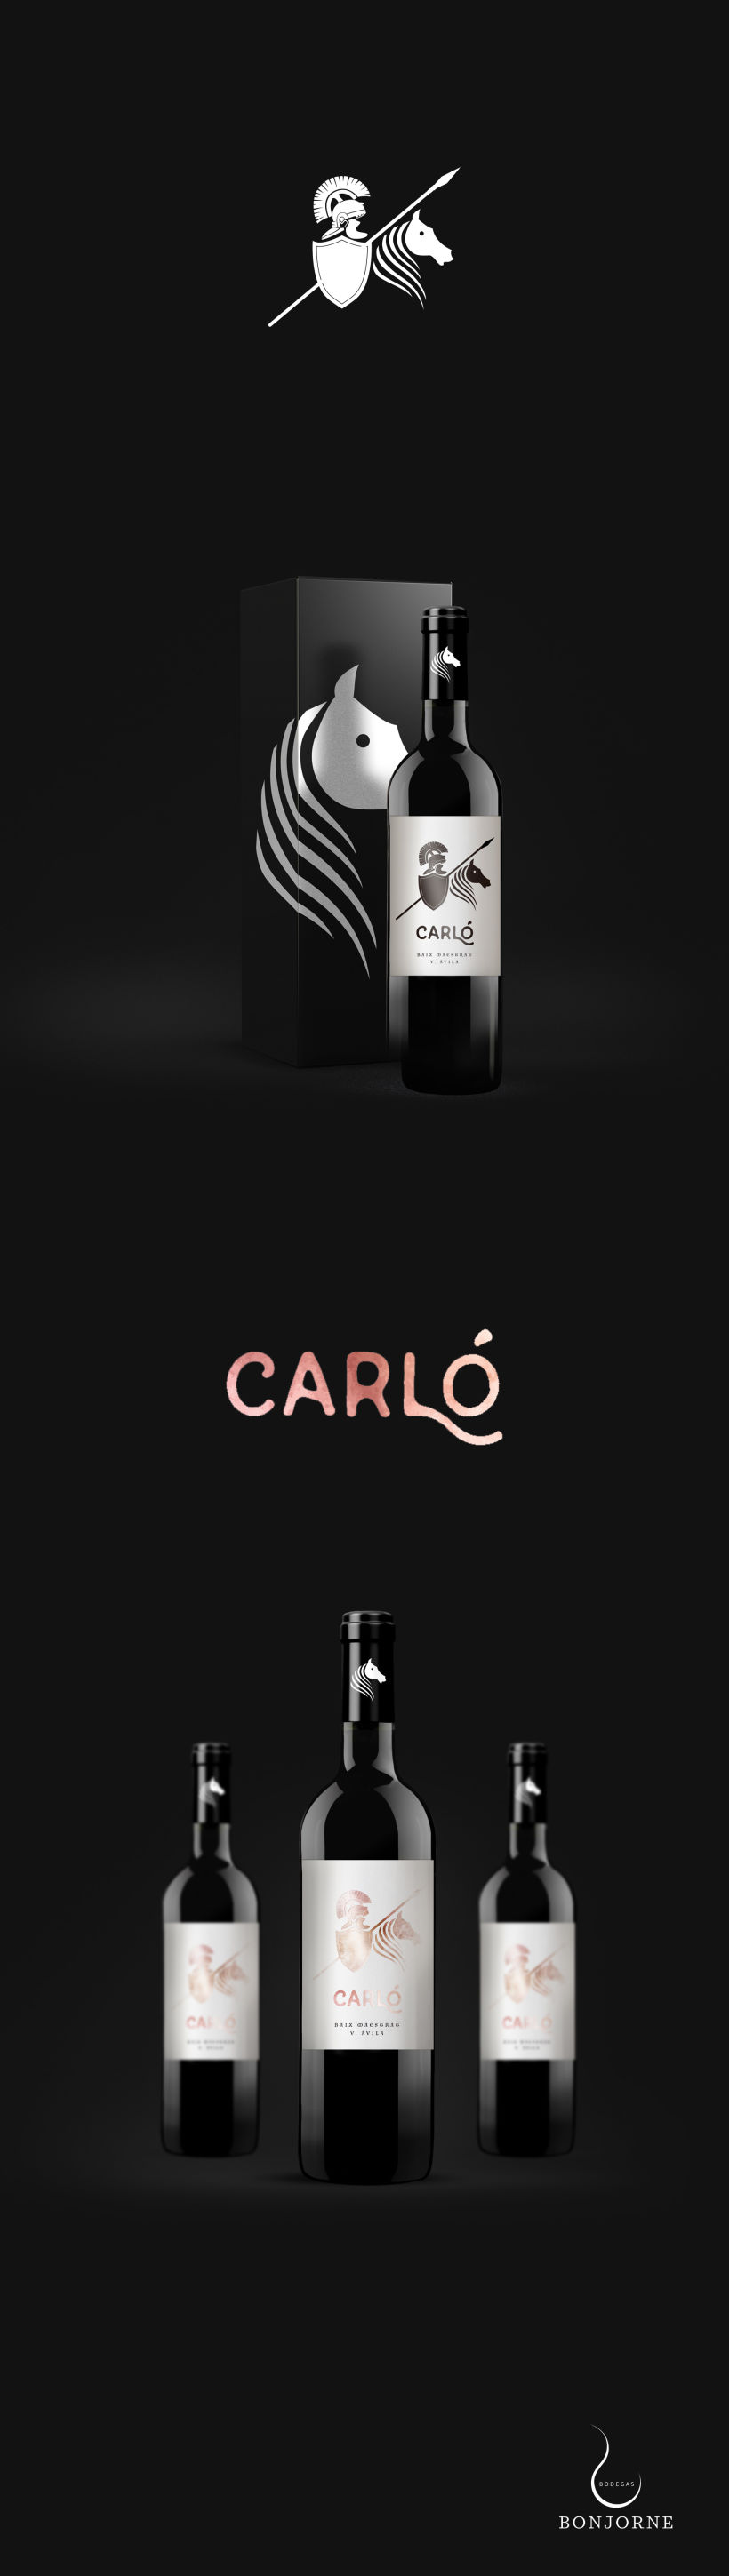 Diseño etiqueta de vino Carló · Bodegas Bonjorne -1